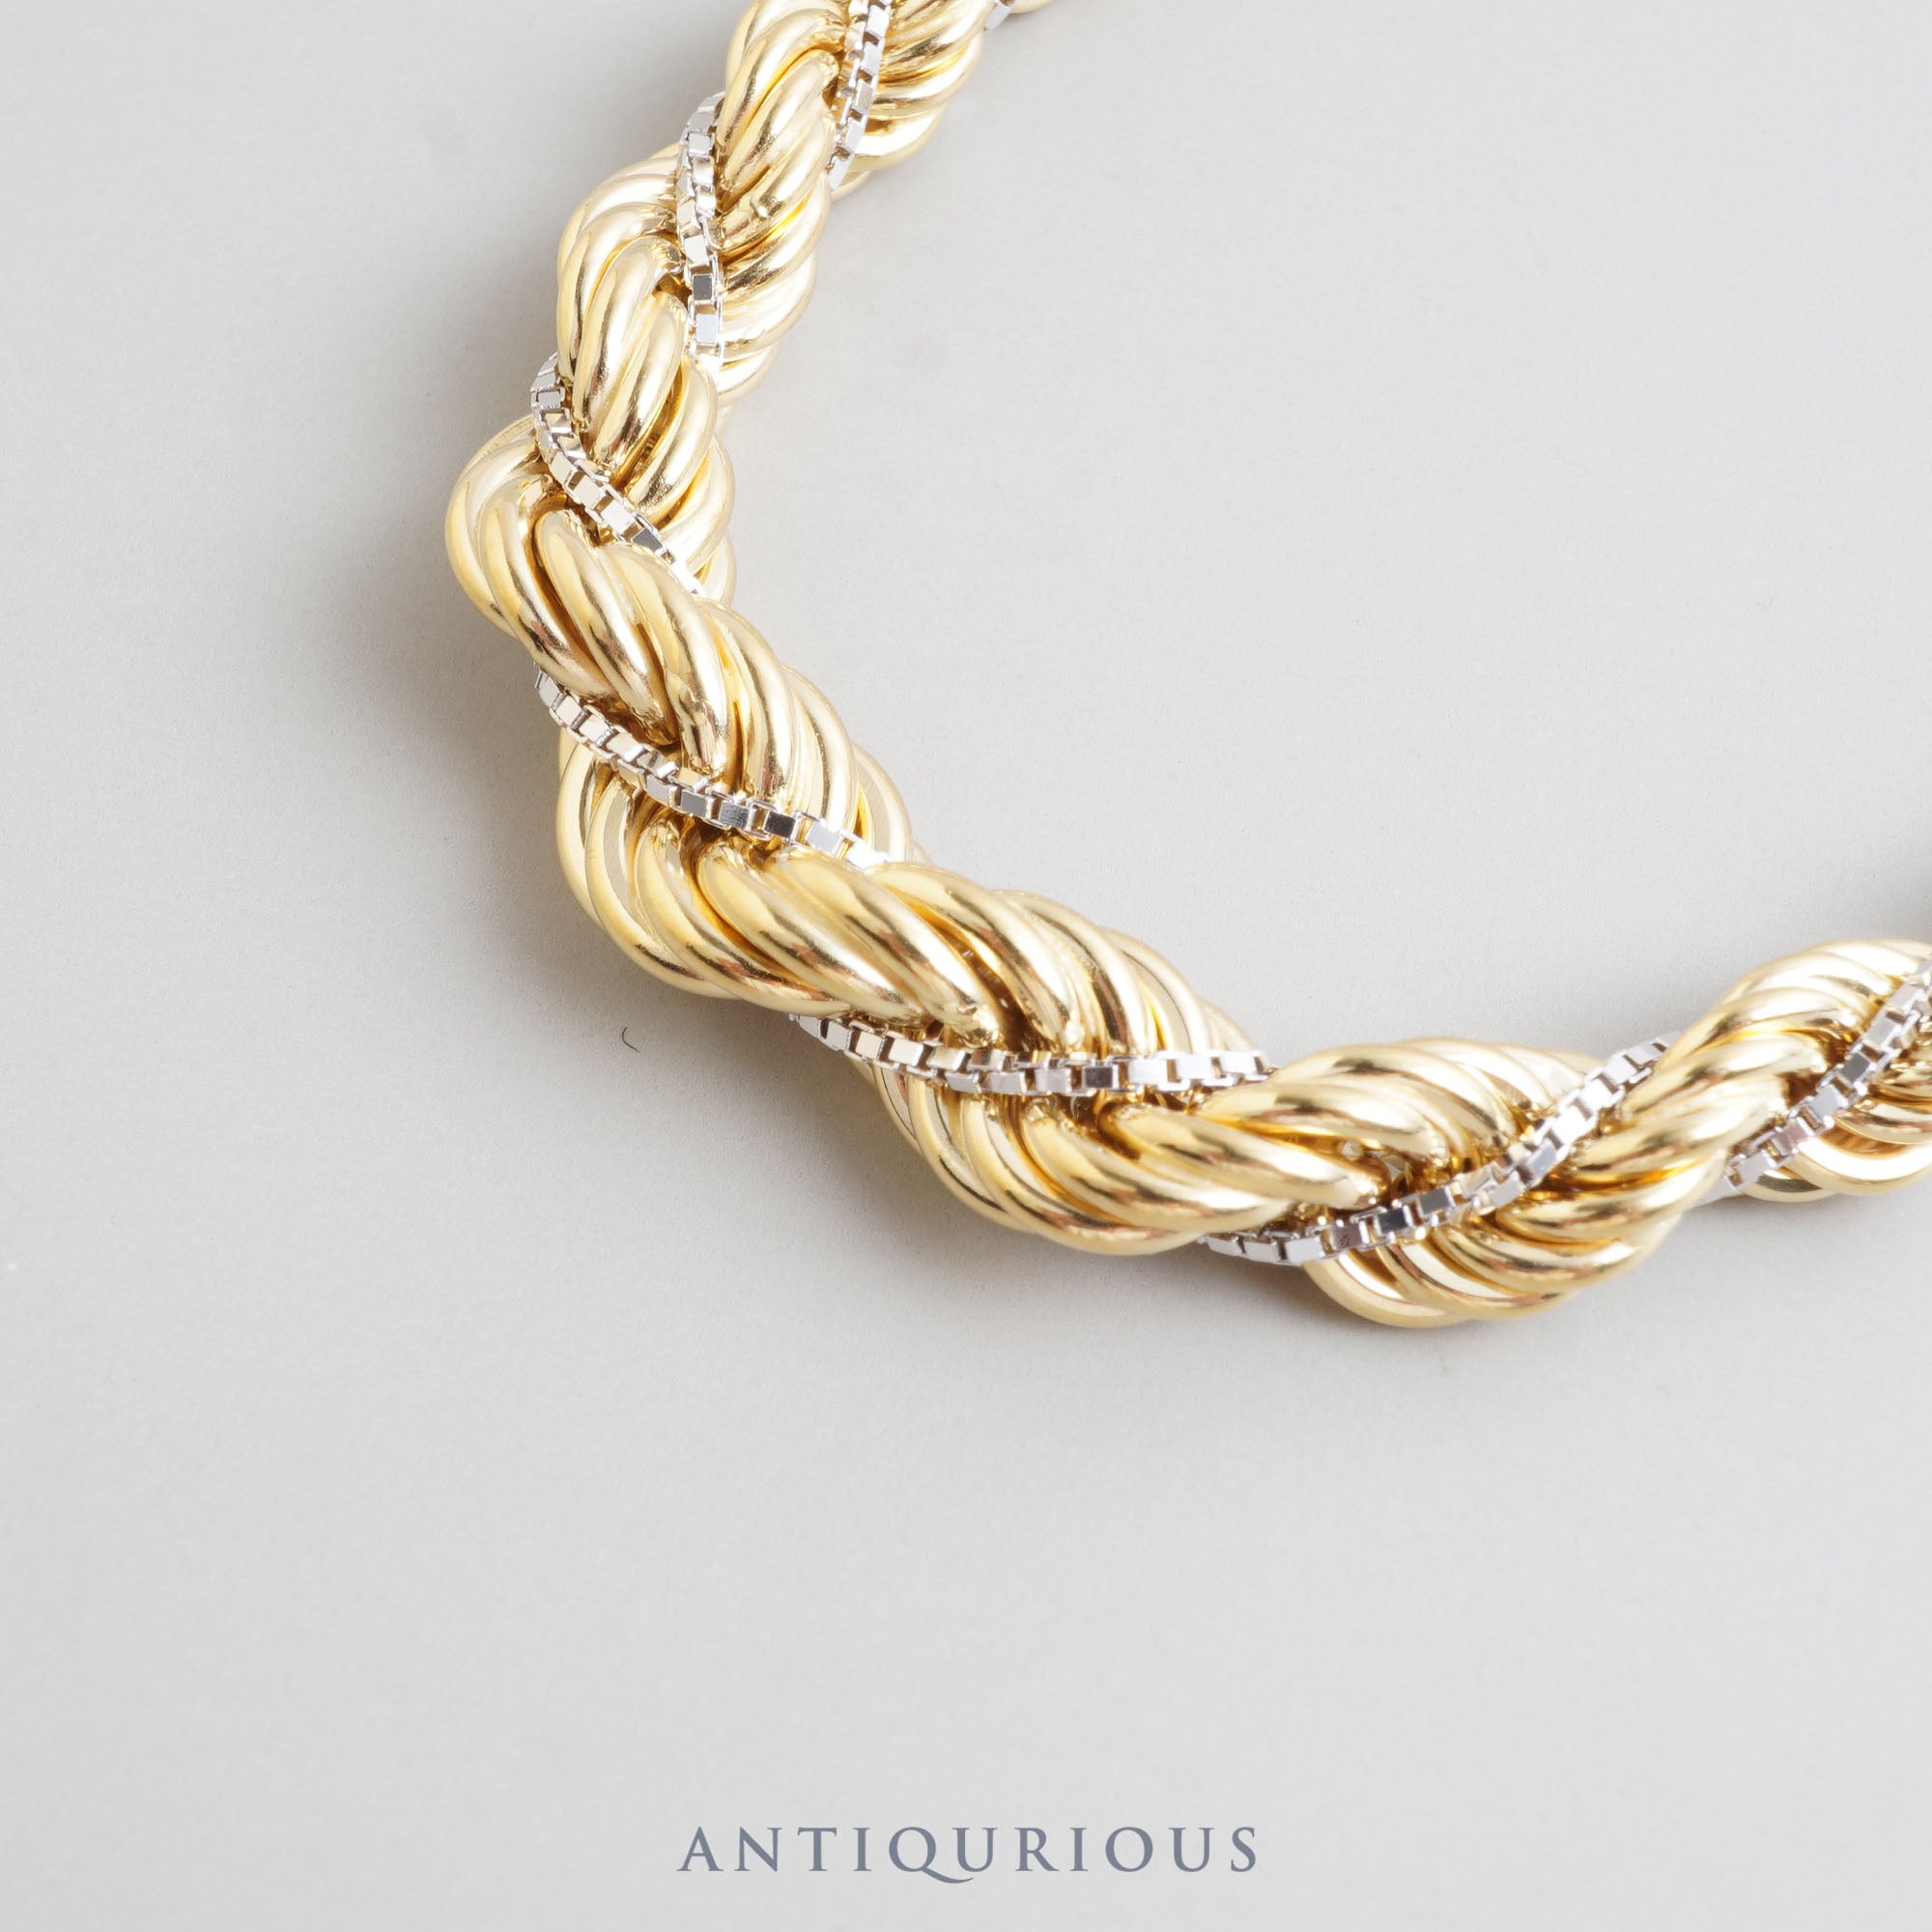 UNOAERRE necklace long chain